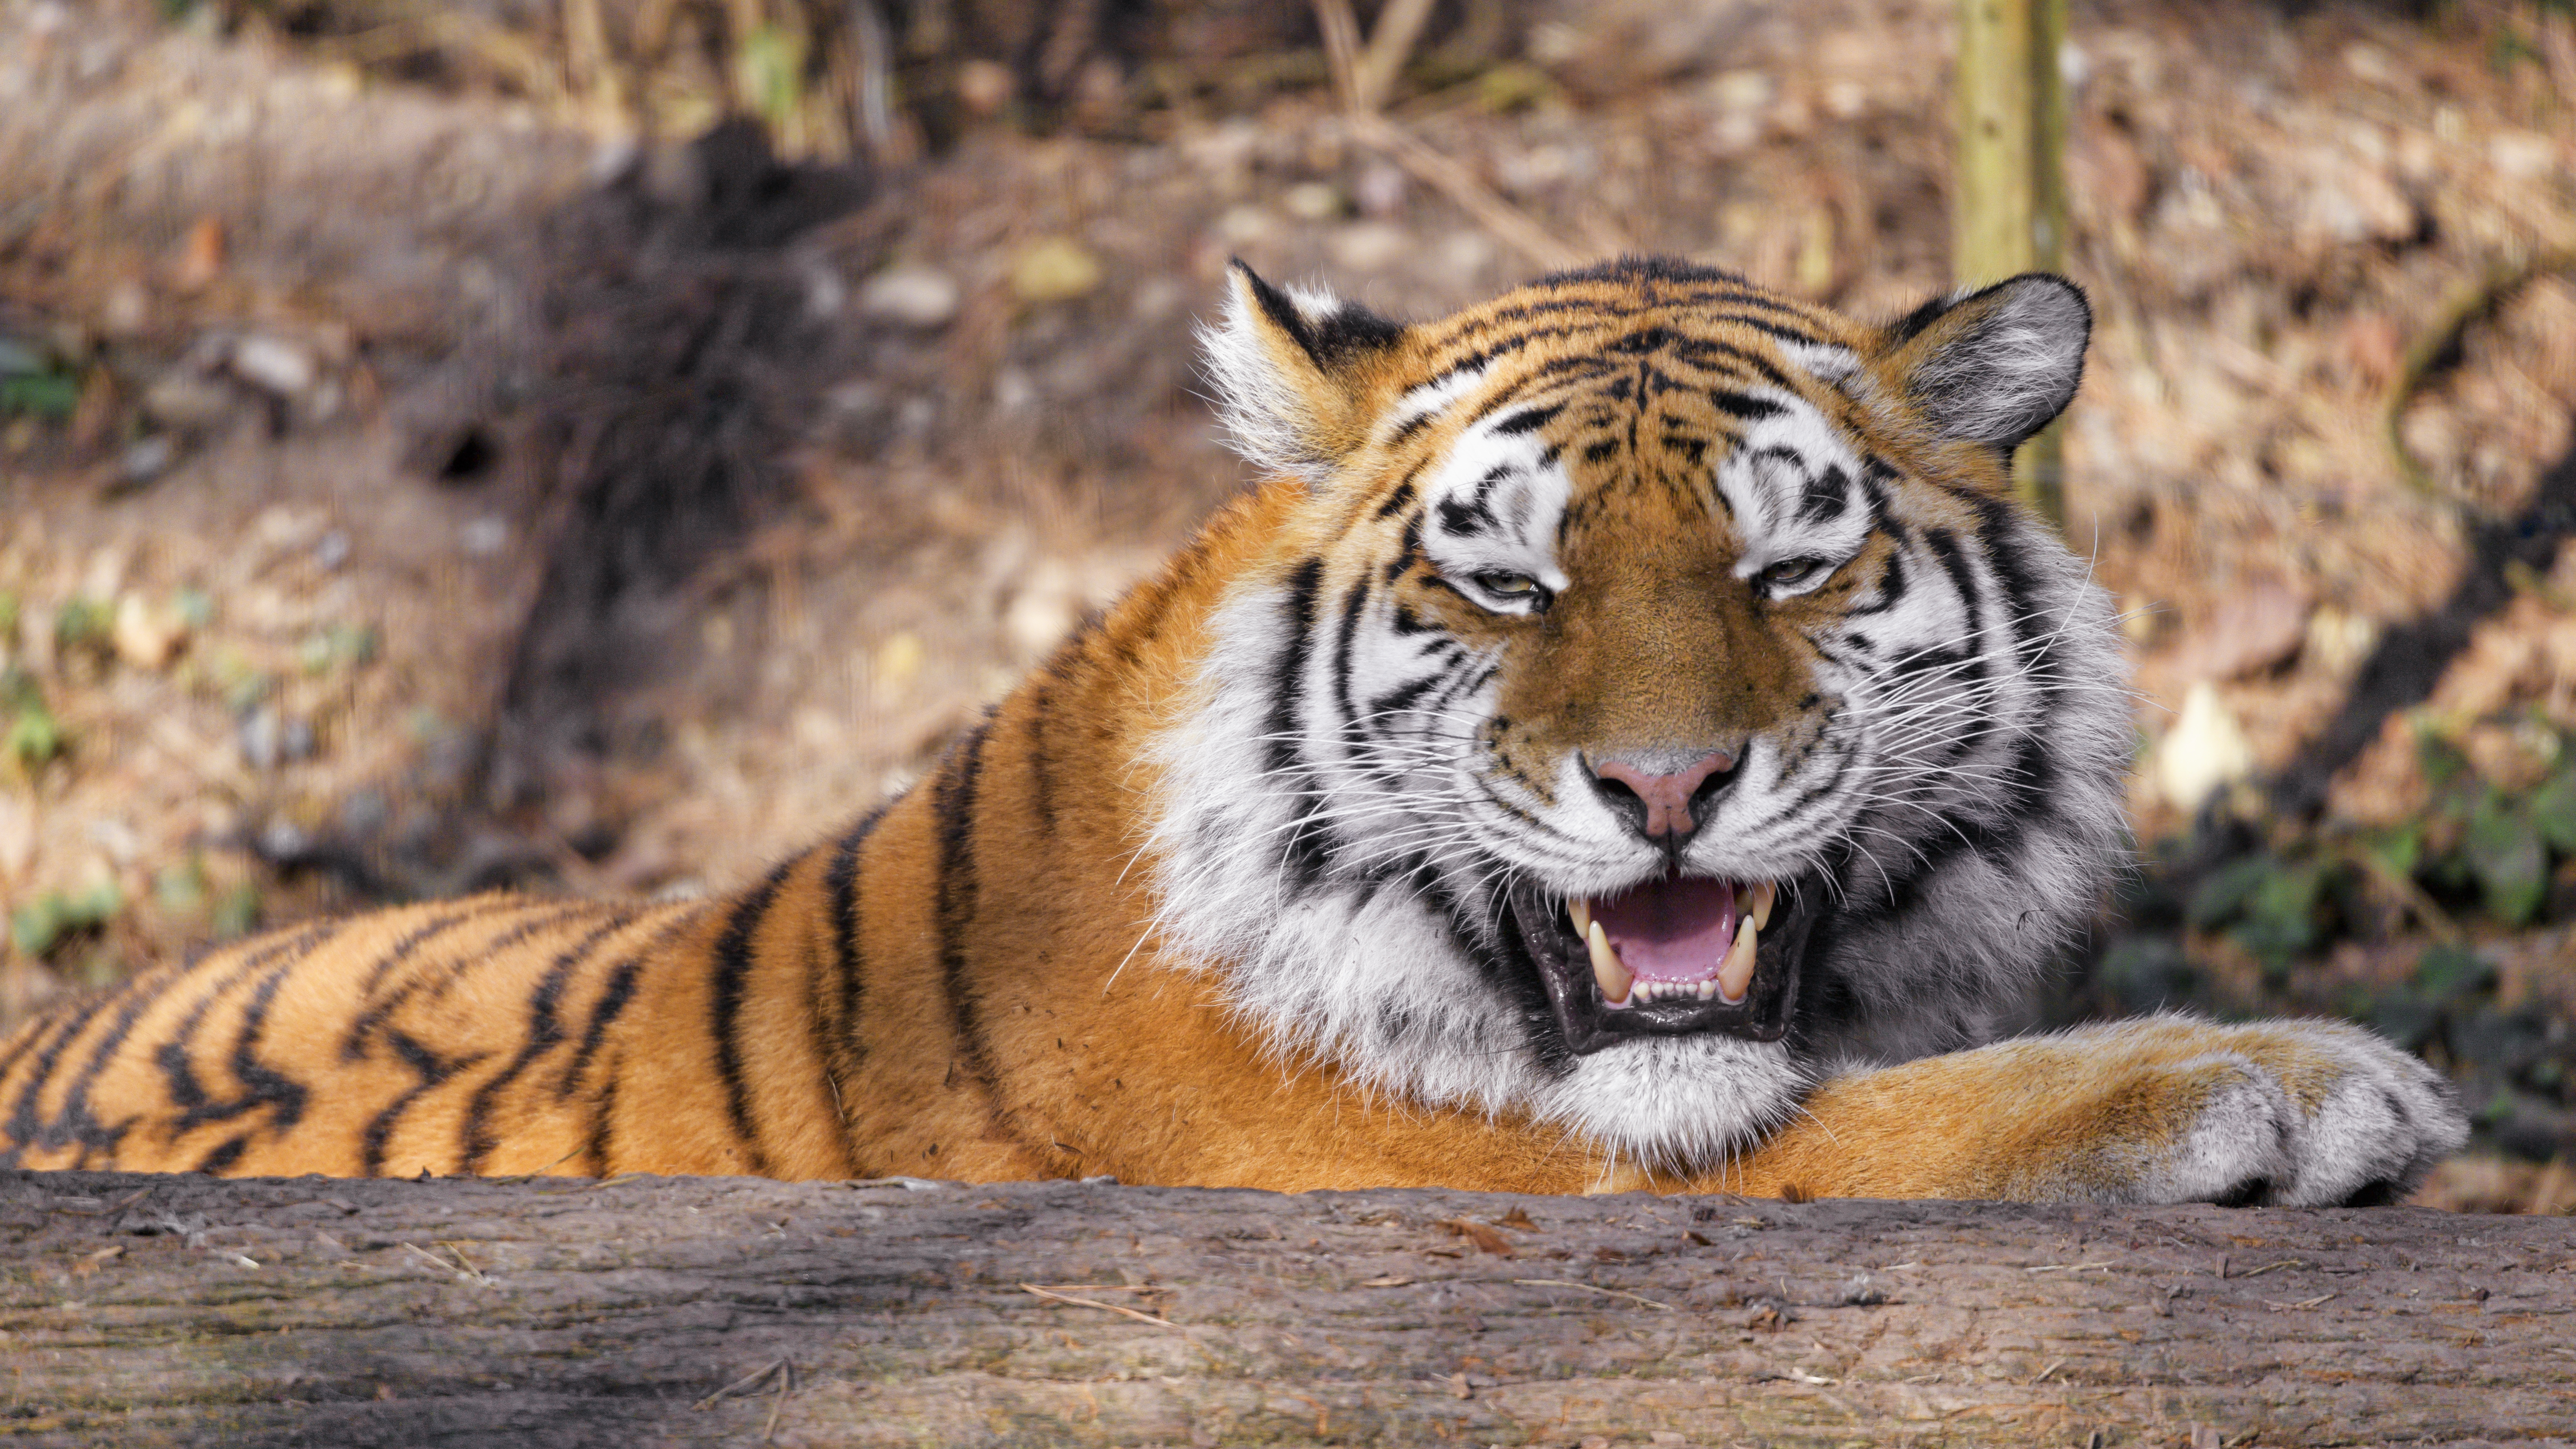 128910 免費下載壁紙 动物, 老虎, 捕食者, 大猫, 虎, 尖牙 屏保和圖片